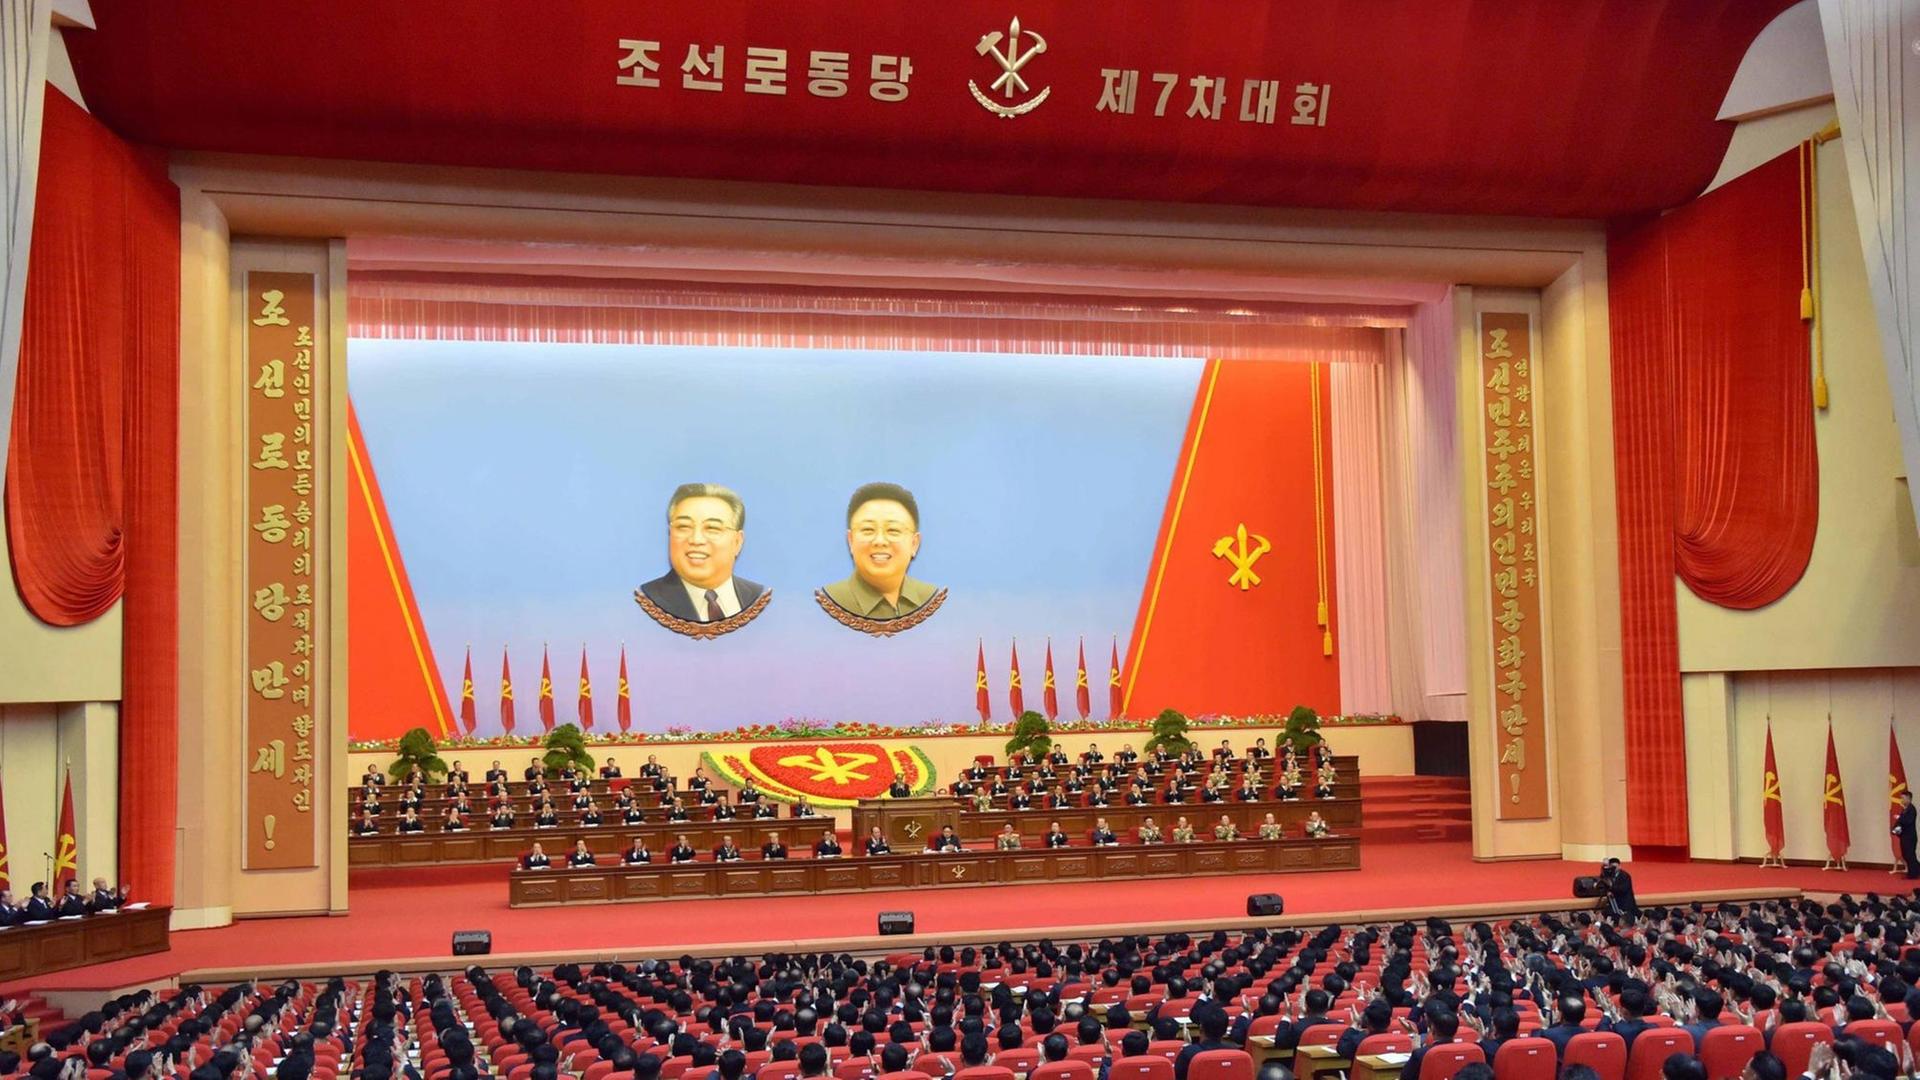 Ein großer Saal mit Bühne, die von einem roten Umhang gesäumt ist. In der Bühne hängen große Bilder von Kim Jong-un und Kim Il-sung, auf der Bühen sitzen Parteifunktionäre, im Publikum Delegierte.